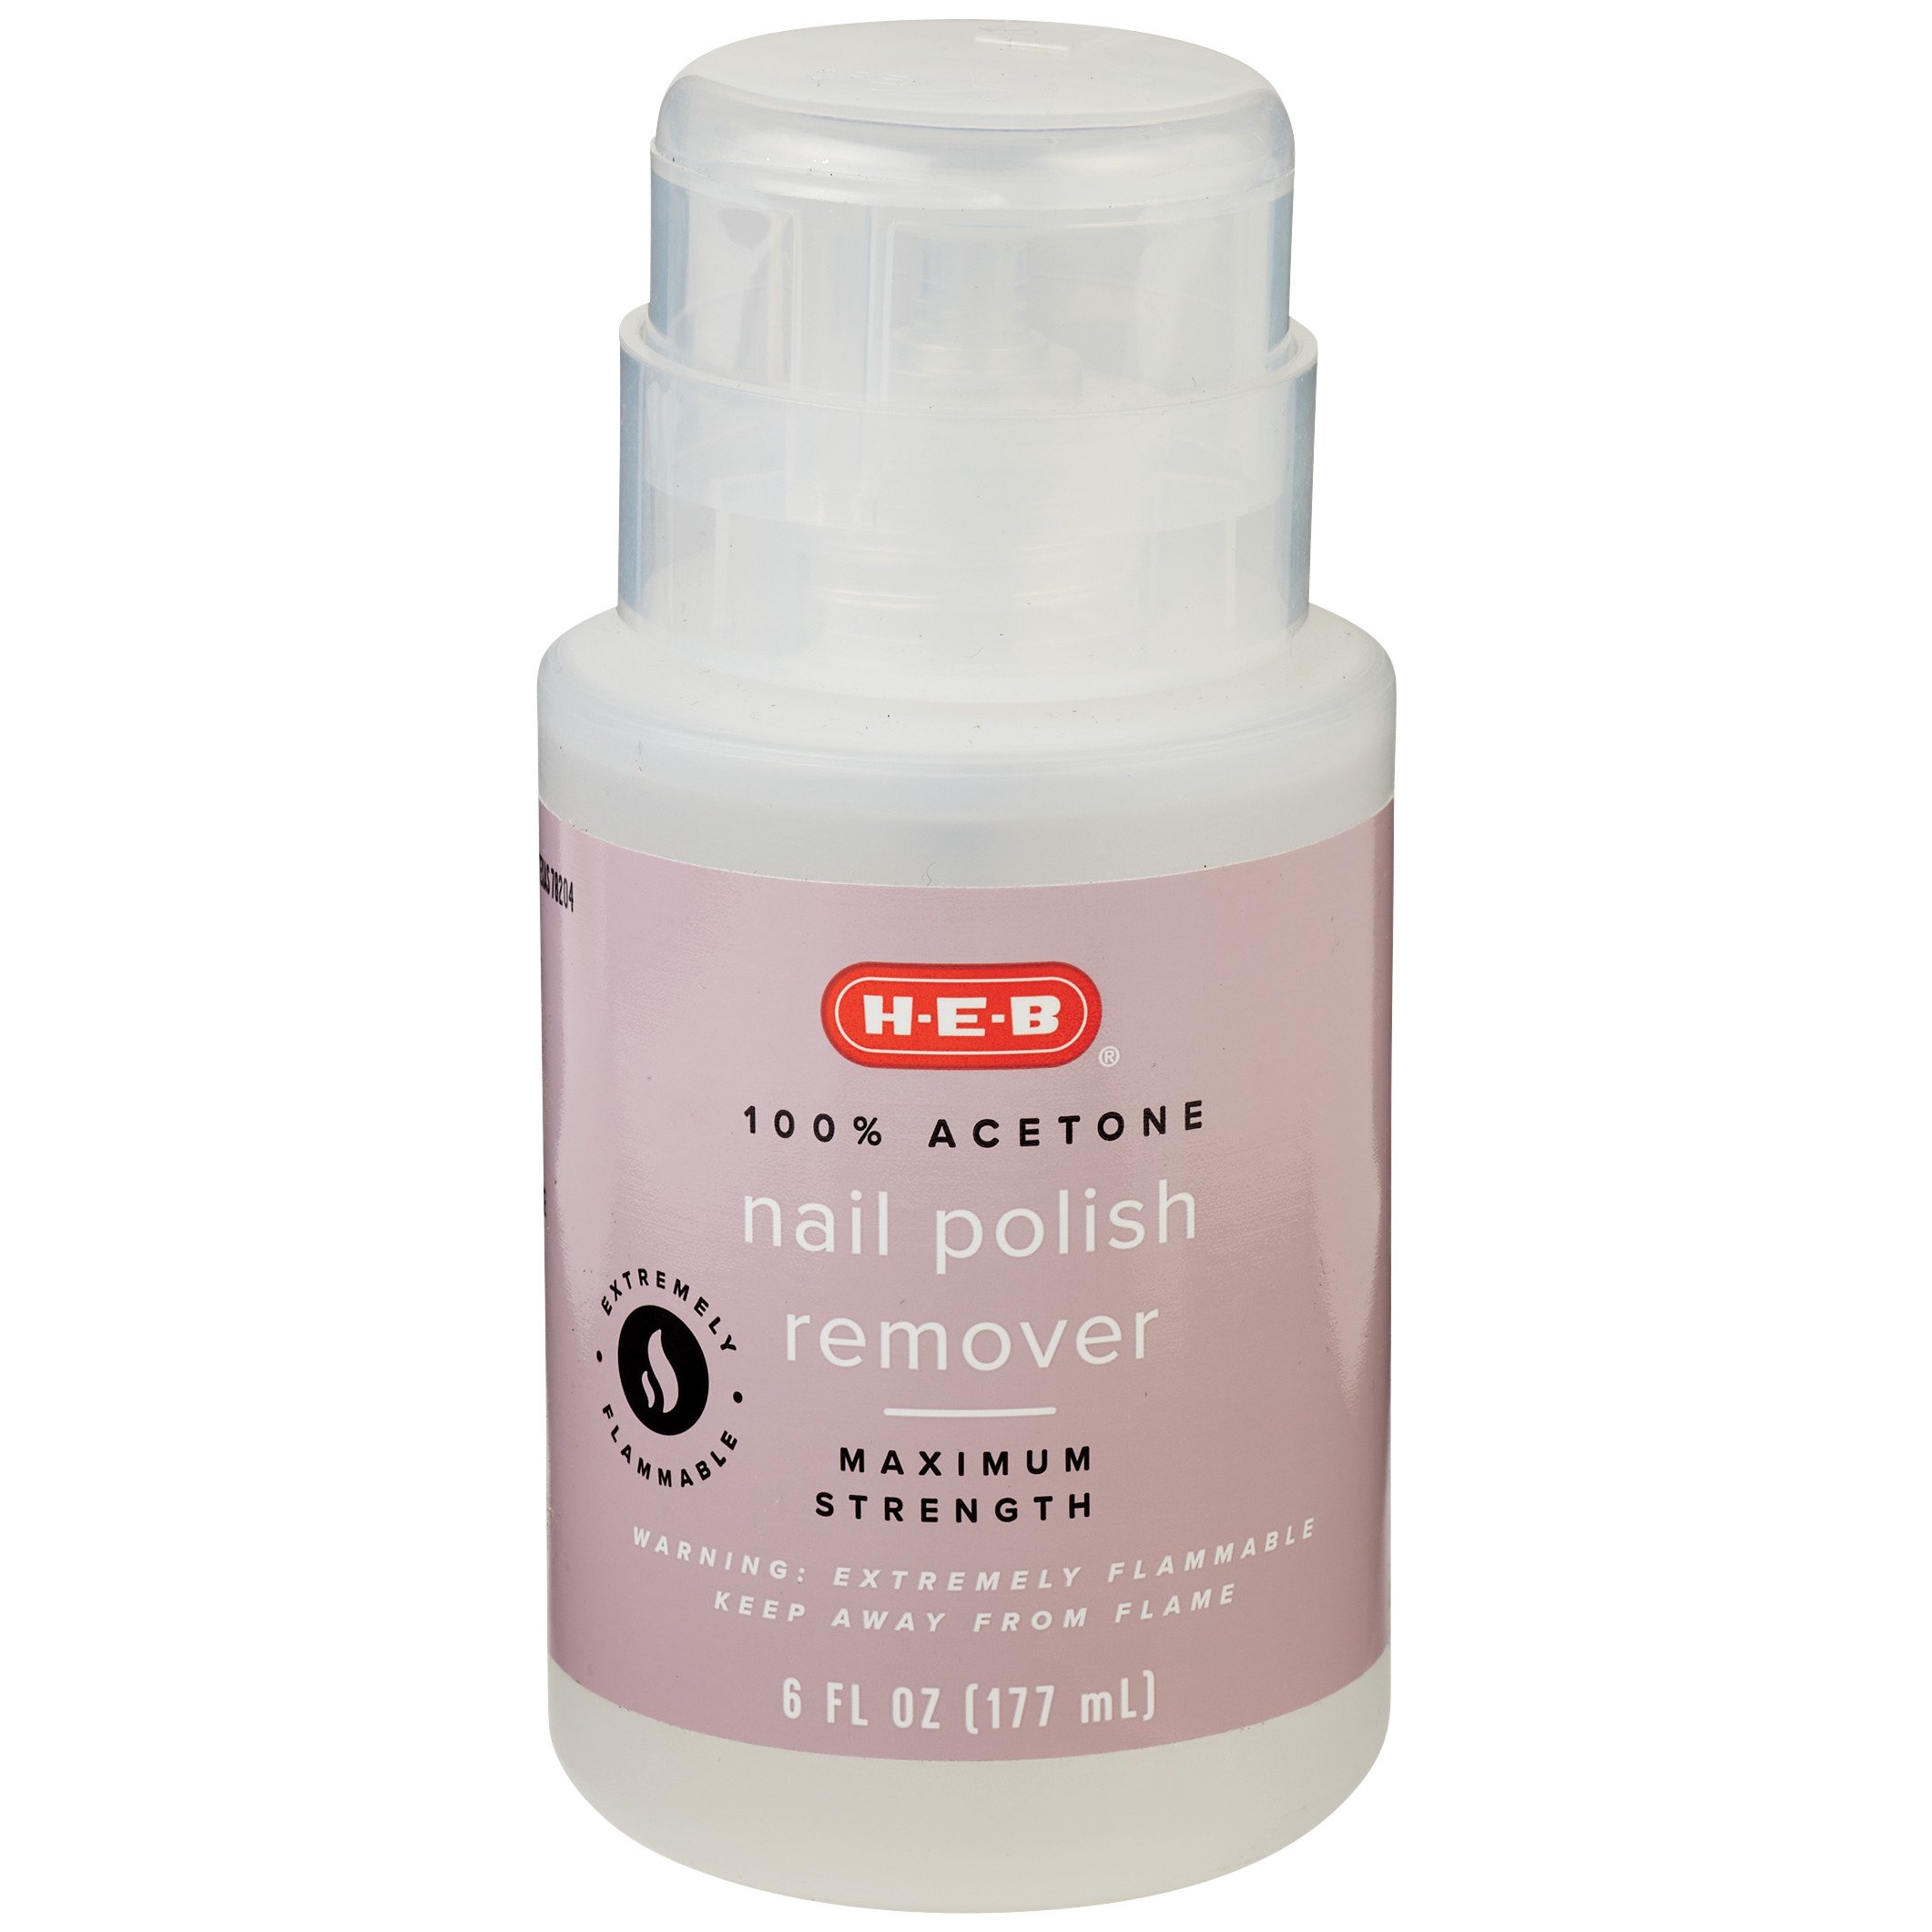 H-E-B 100% Acetone Nail Polish Remover With Pump - Shop Nails at H-E-B